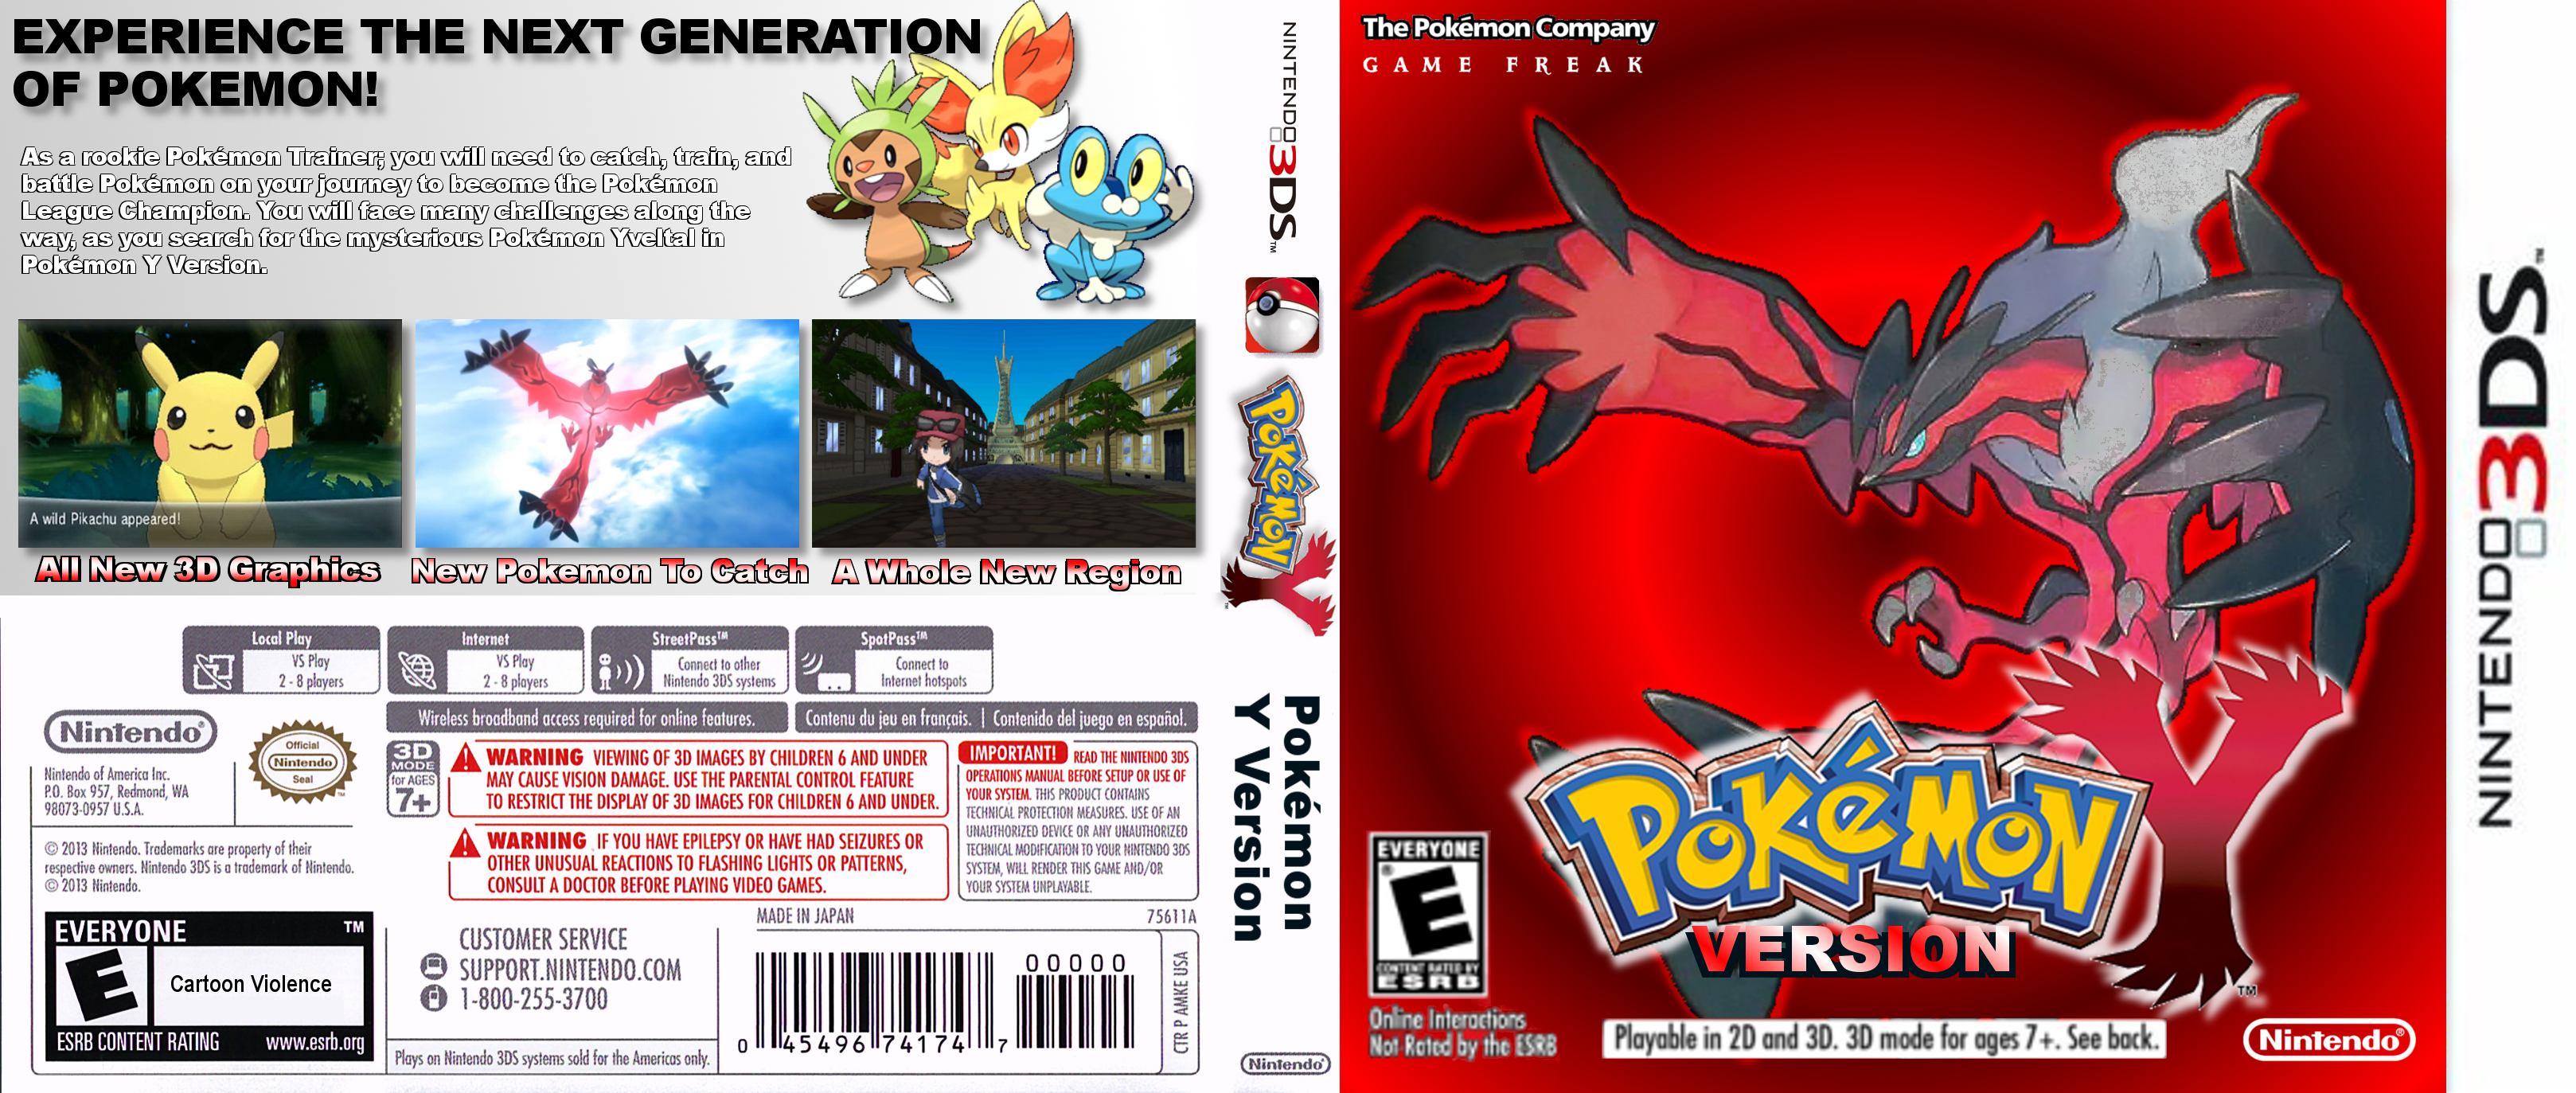 Pokemon Y Version box cover